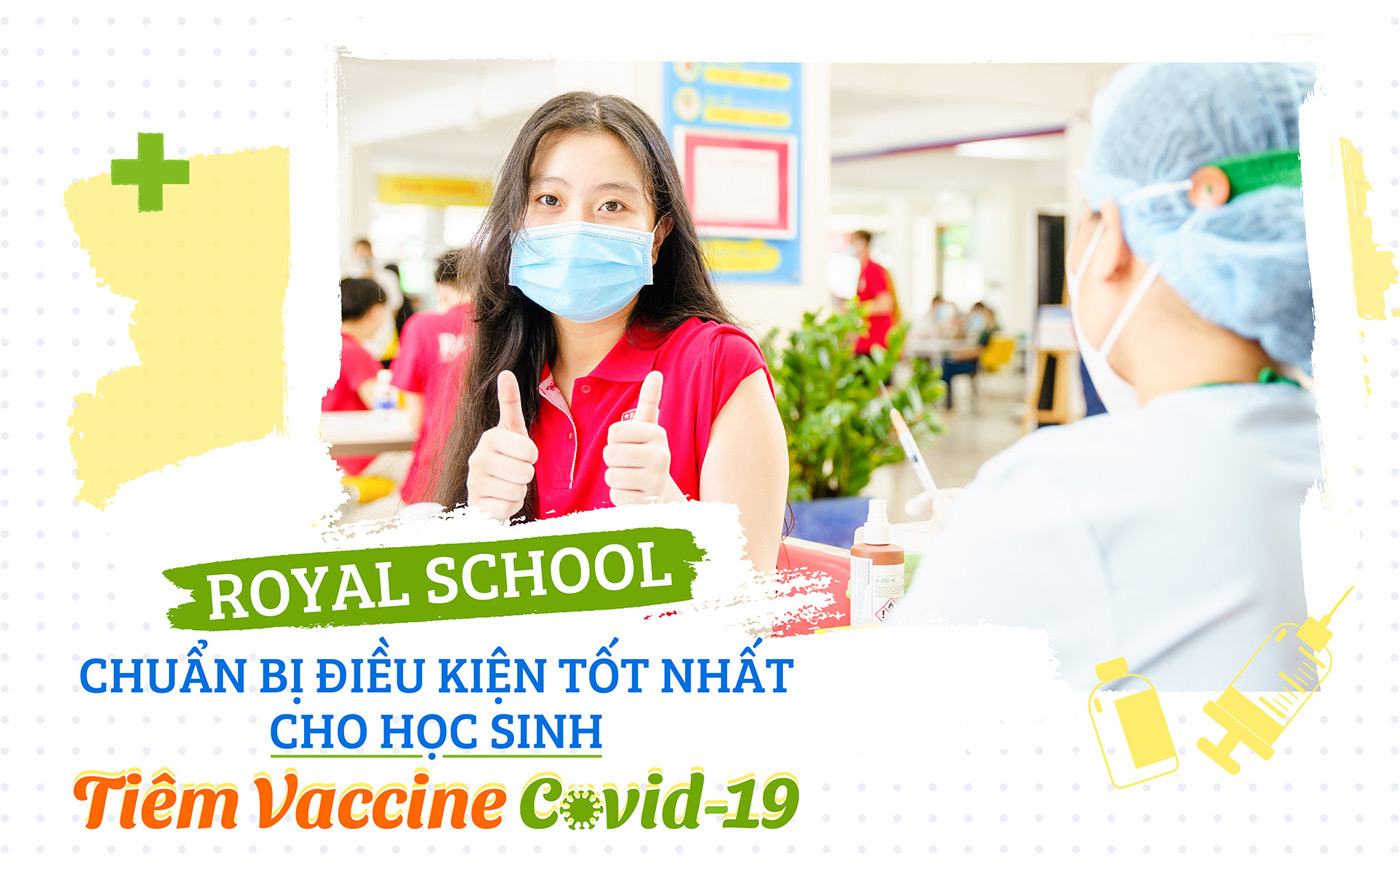 Royal School chuẩn bị điều kiện tốt nhất cho học sinh tiêm vaccine COVID-19 - Ảnh 1